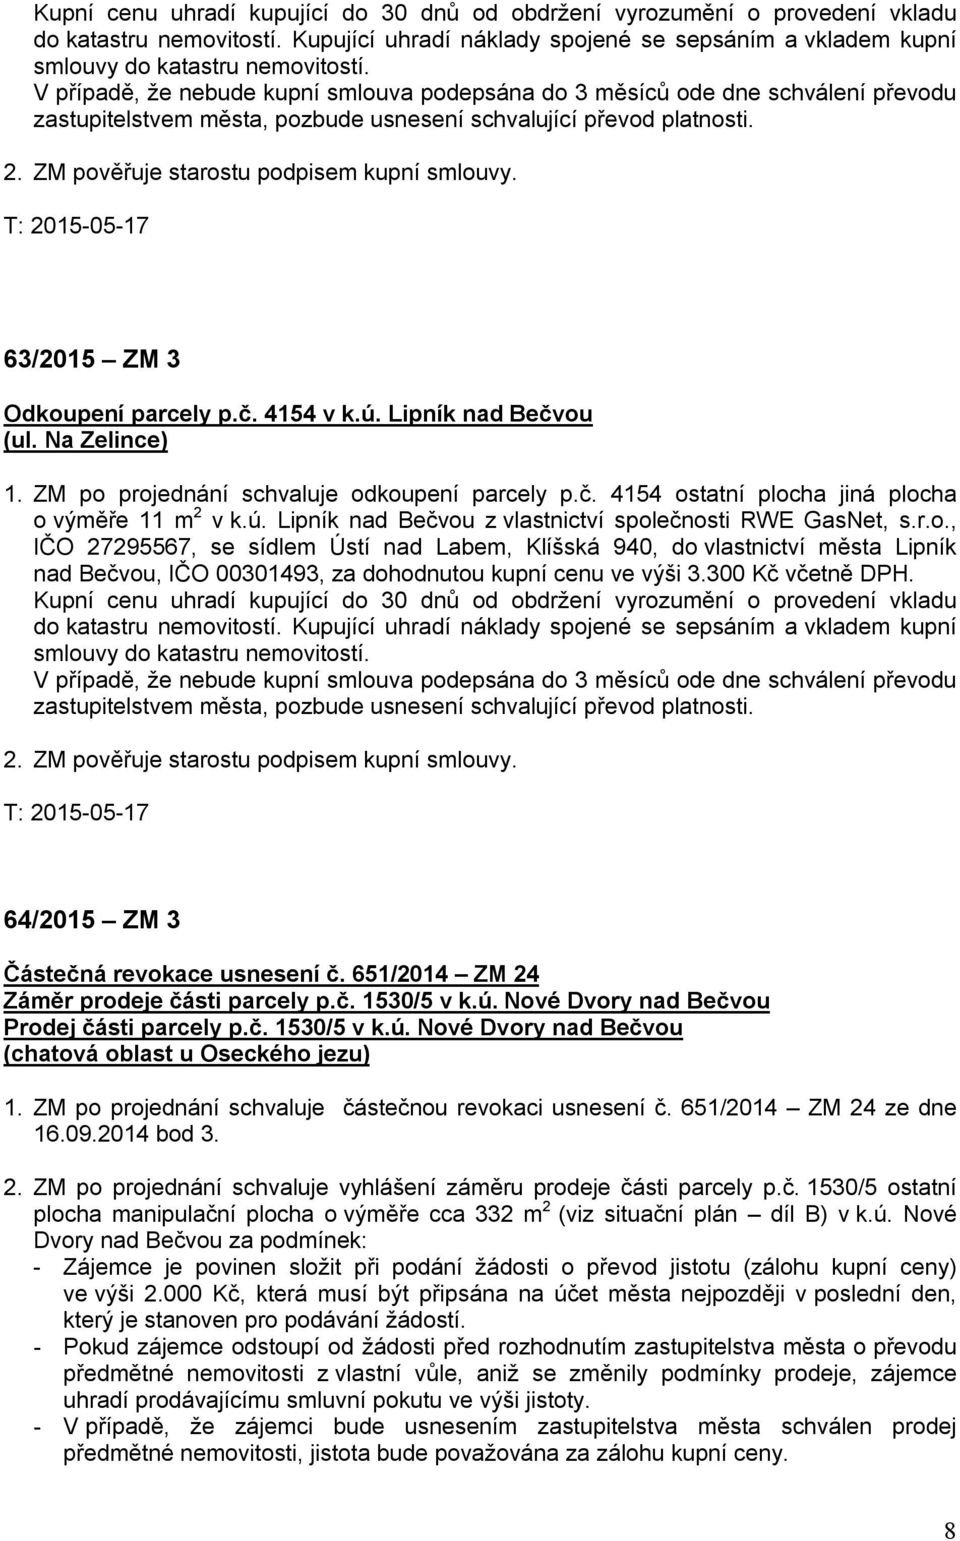 T: 2015-05-17 63/2015 ZM 3 Odkoupení parcely p.č. 4154 v k.ú. Lipník nad Bečvou (ul. Na Zelince) 1. ZM po projednání schvaluje odkoupení parcely p.č. 4154 ostatní plocha jiná plocha o výměře 11 m 2 v k.